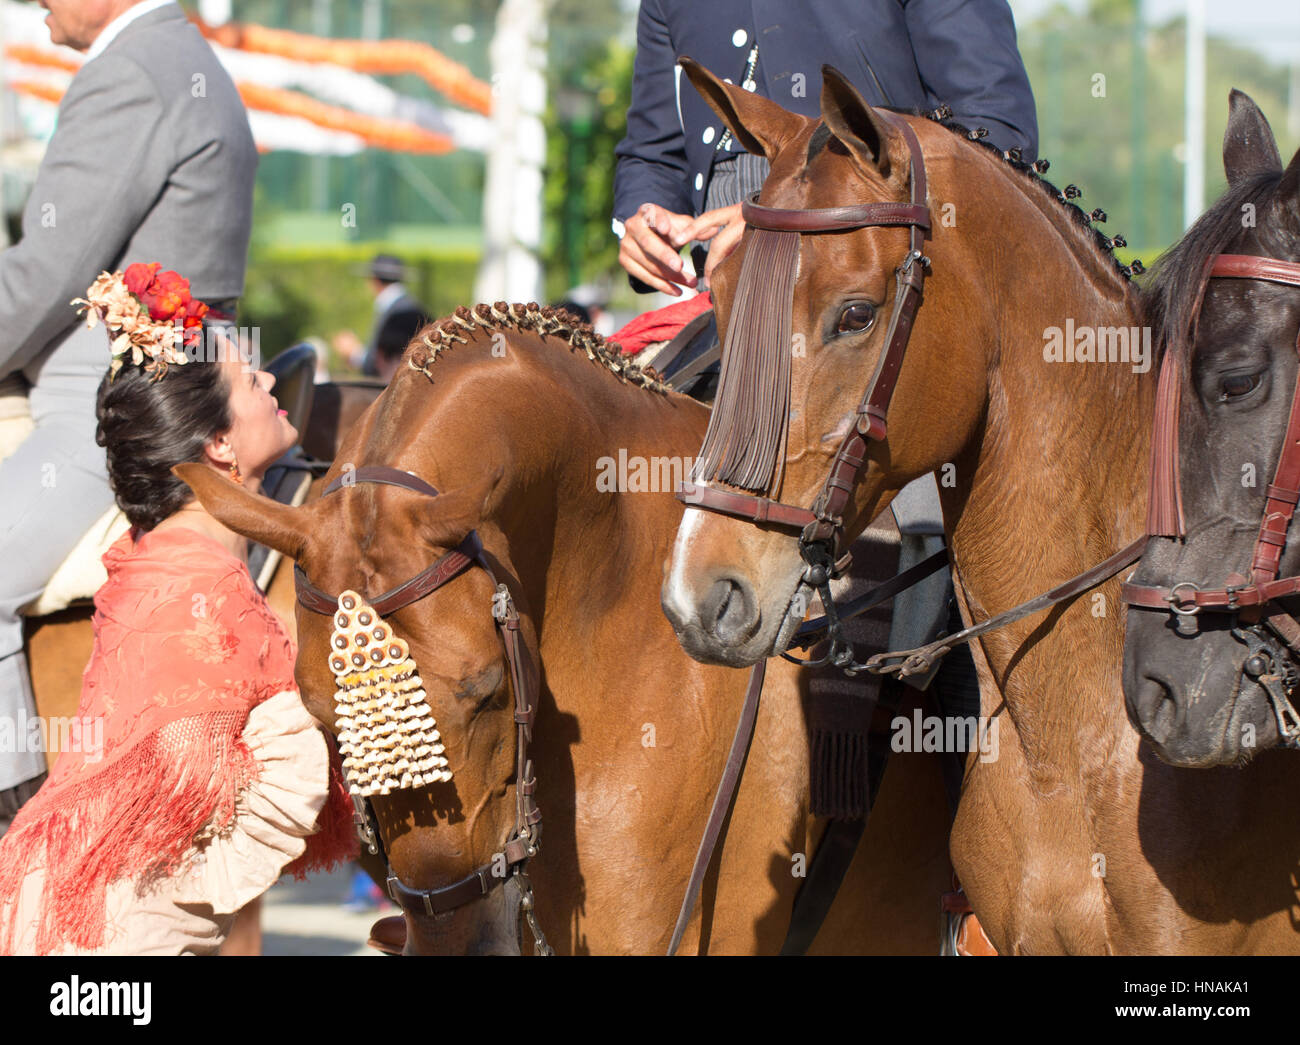 Séville, ESPAGNE - Apr, 25 : femme en costume traditionnel avec des chevaux à la foire d'Avril de Séville, 25 avril 2014 à Séville, Espagne Banque D'Images